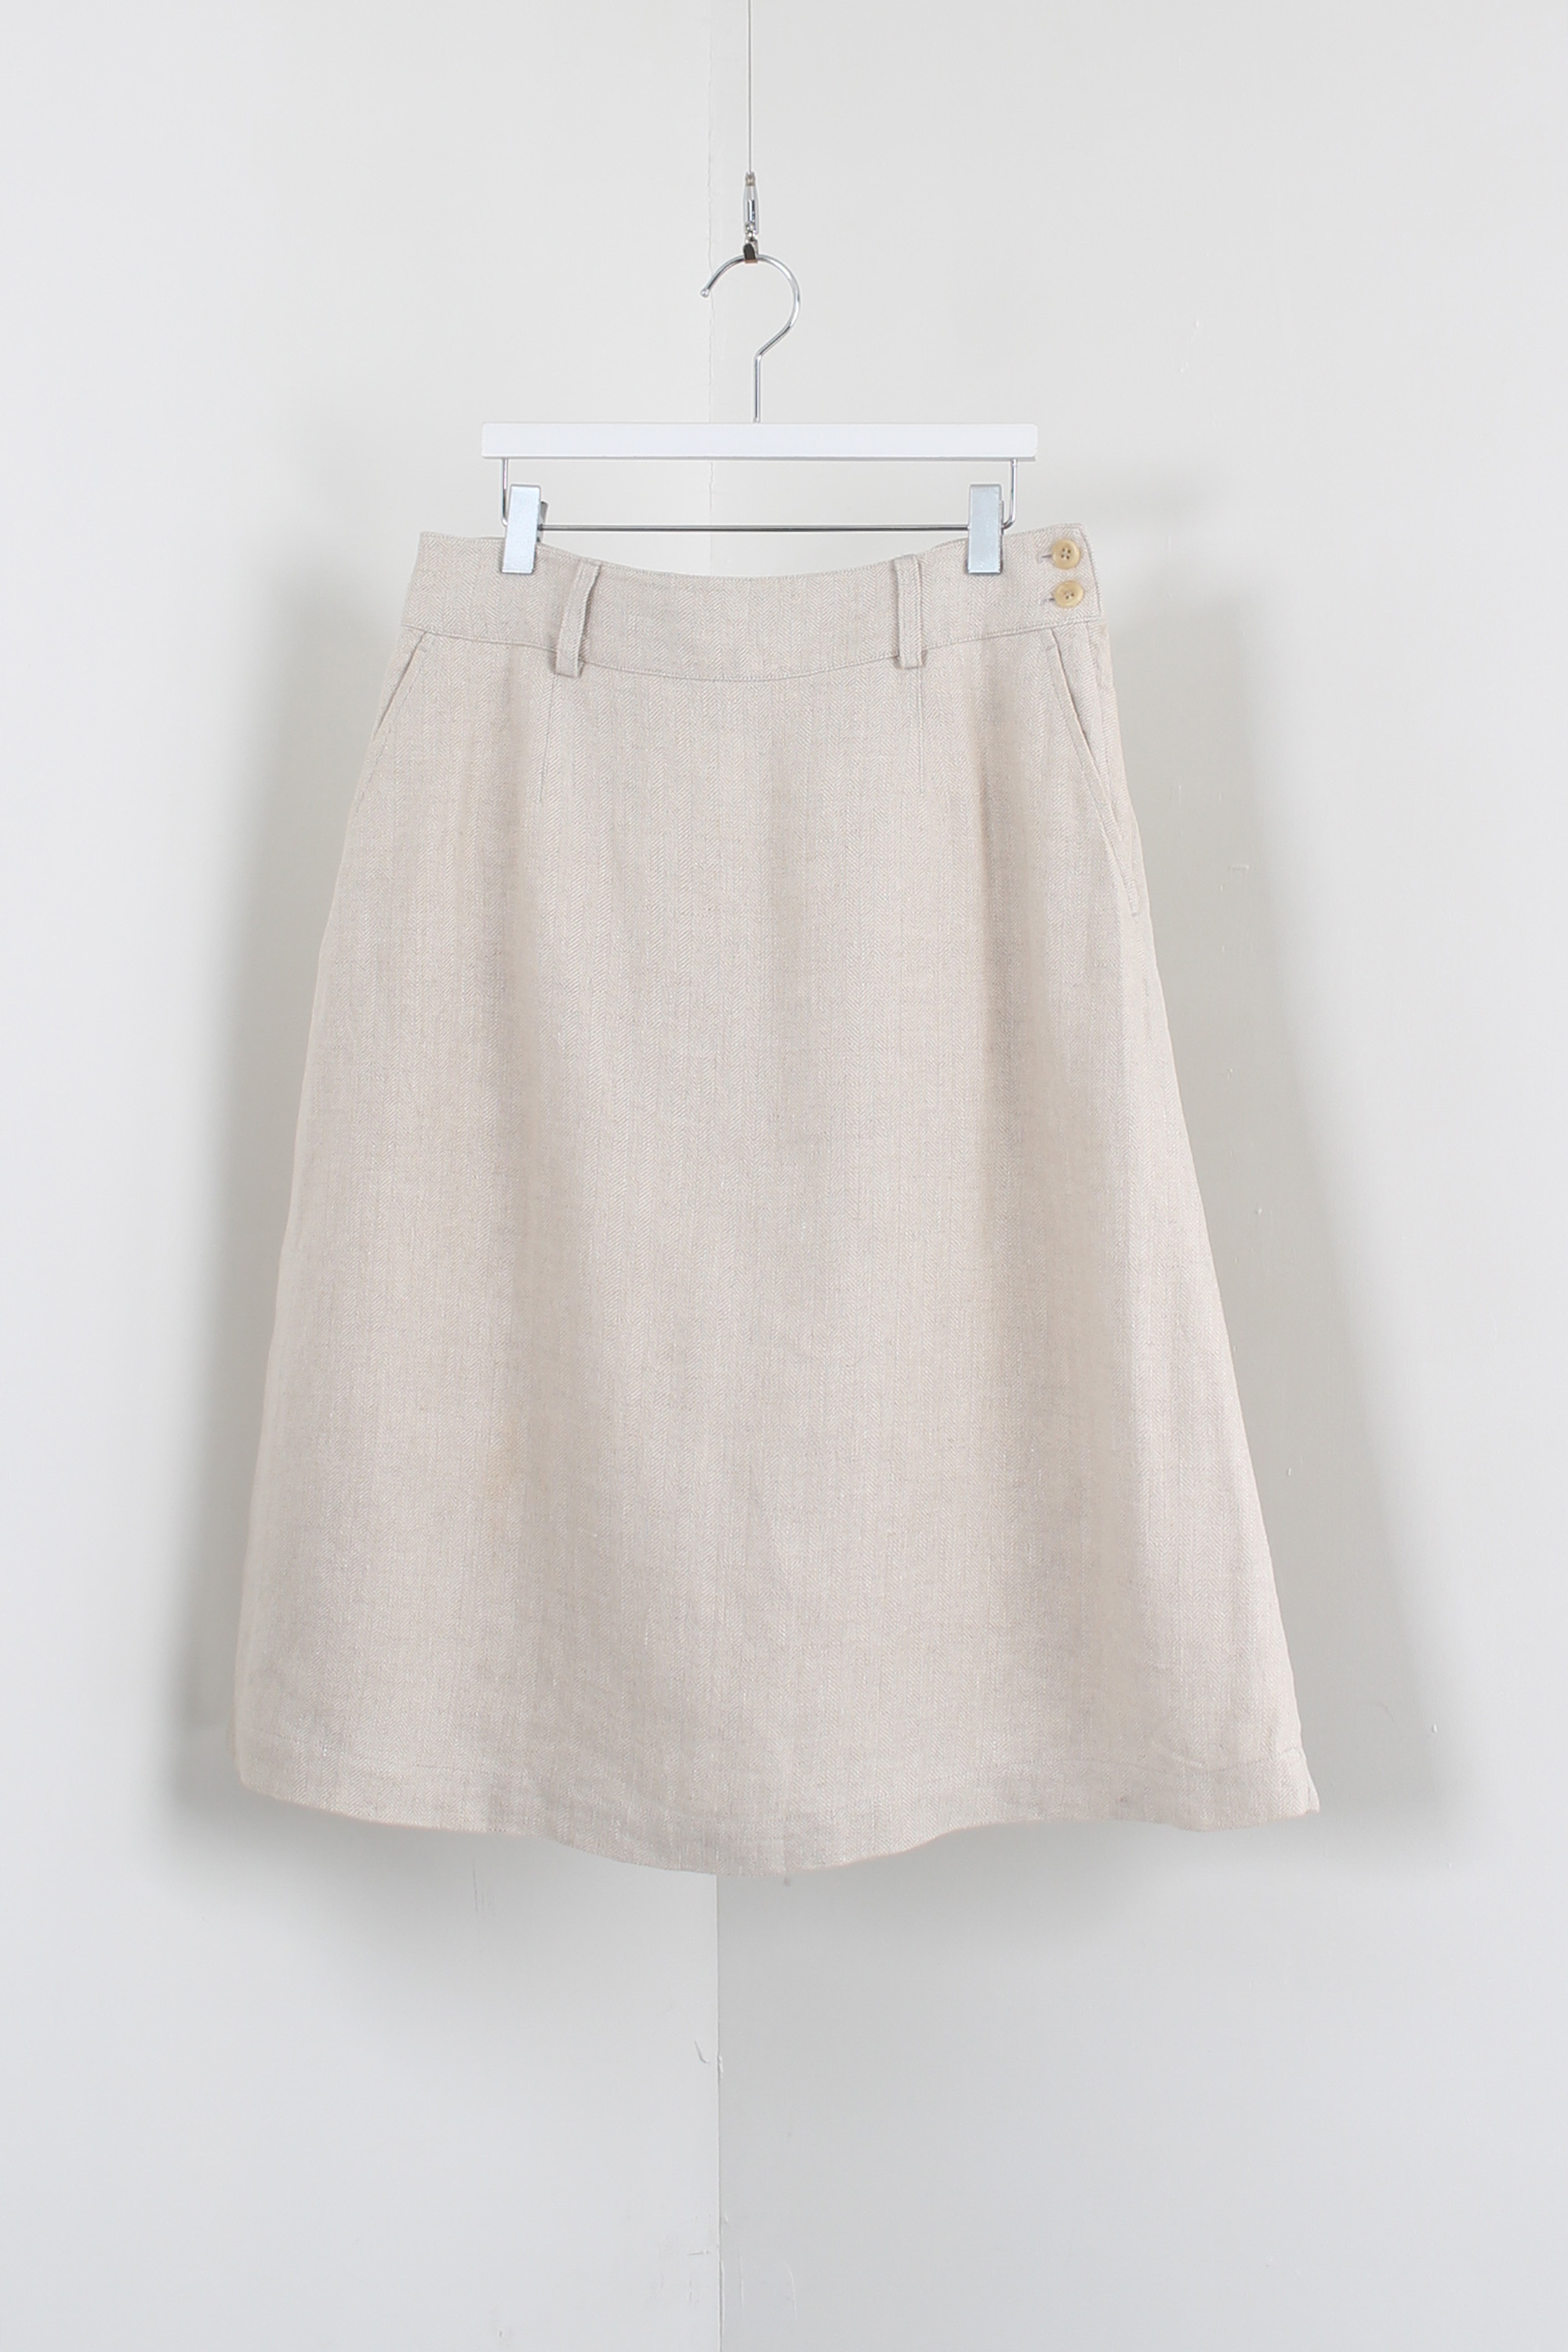 margaret howell linen skirt